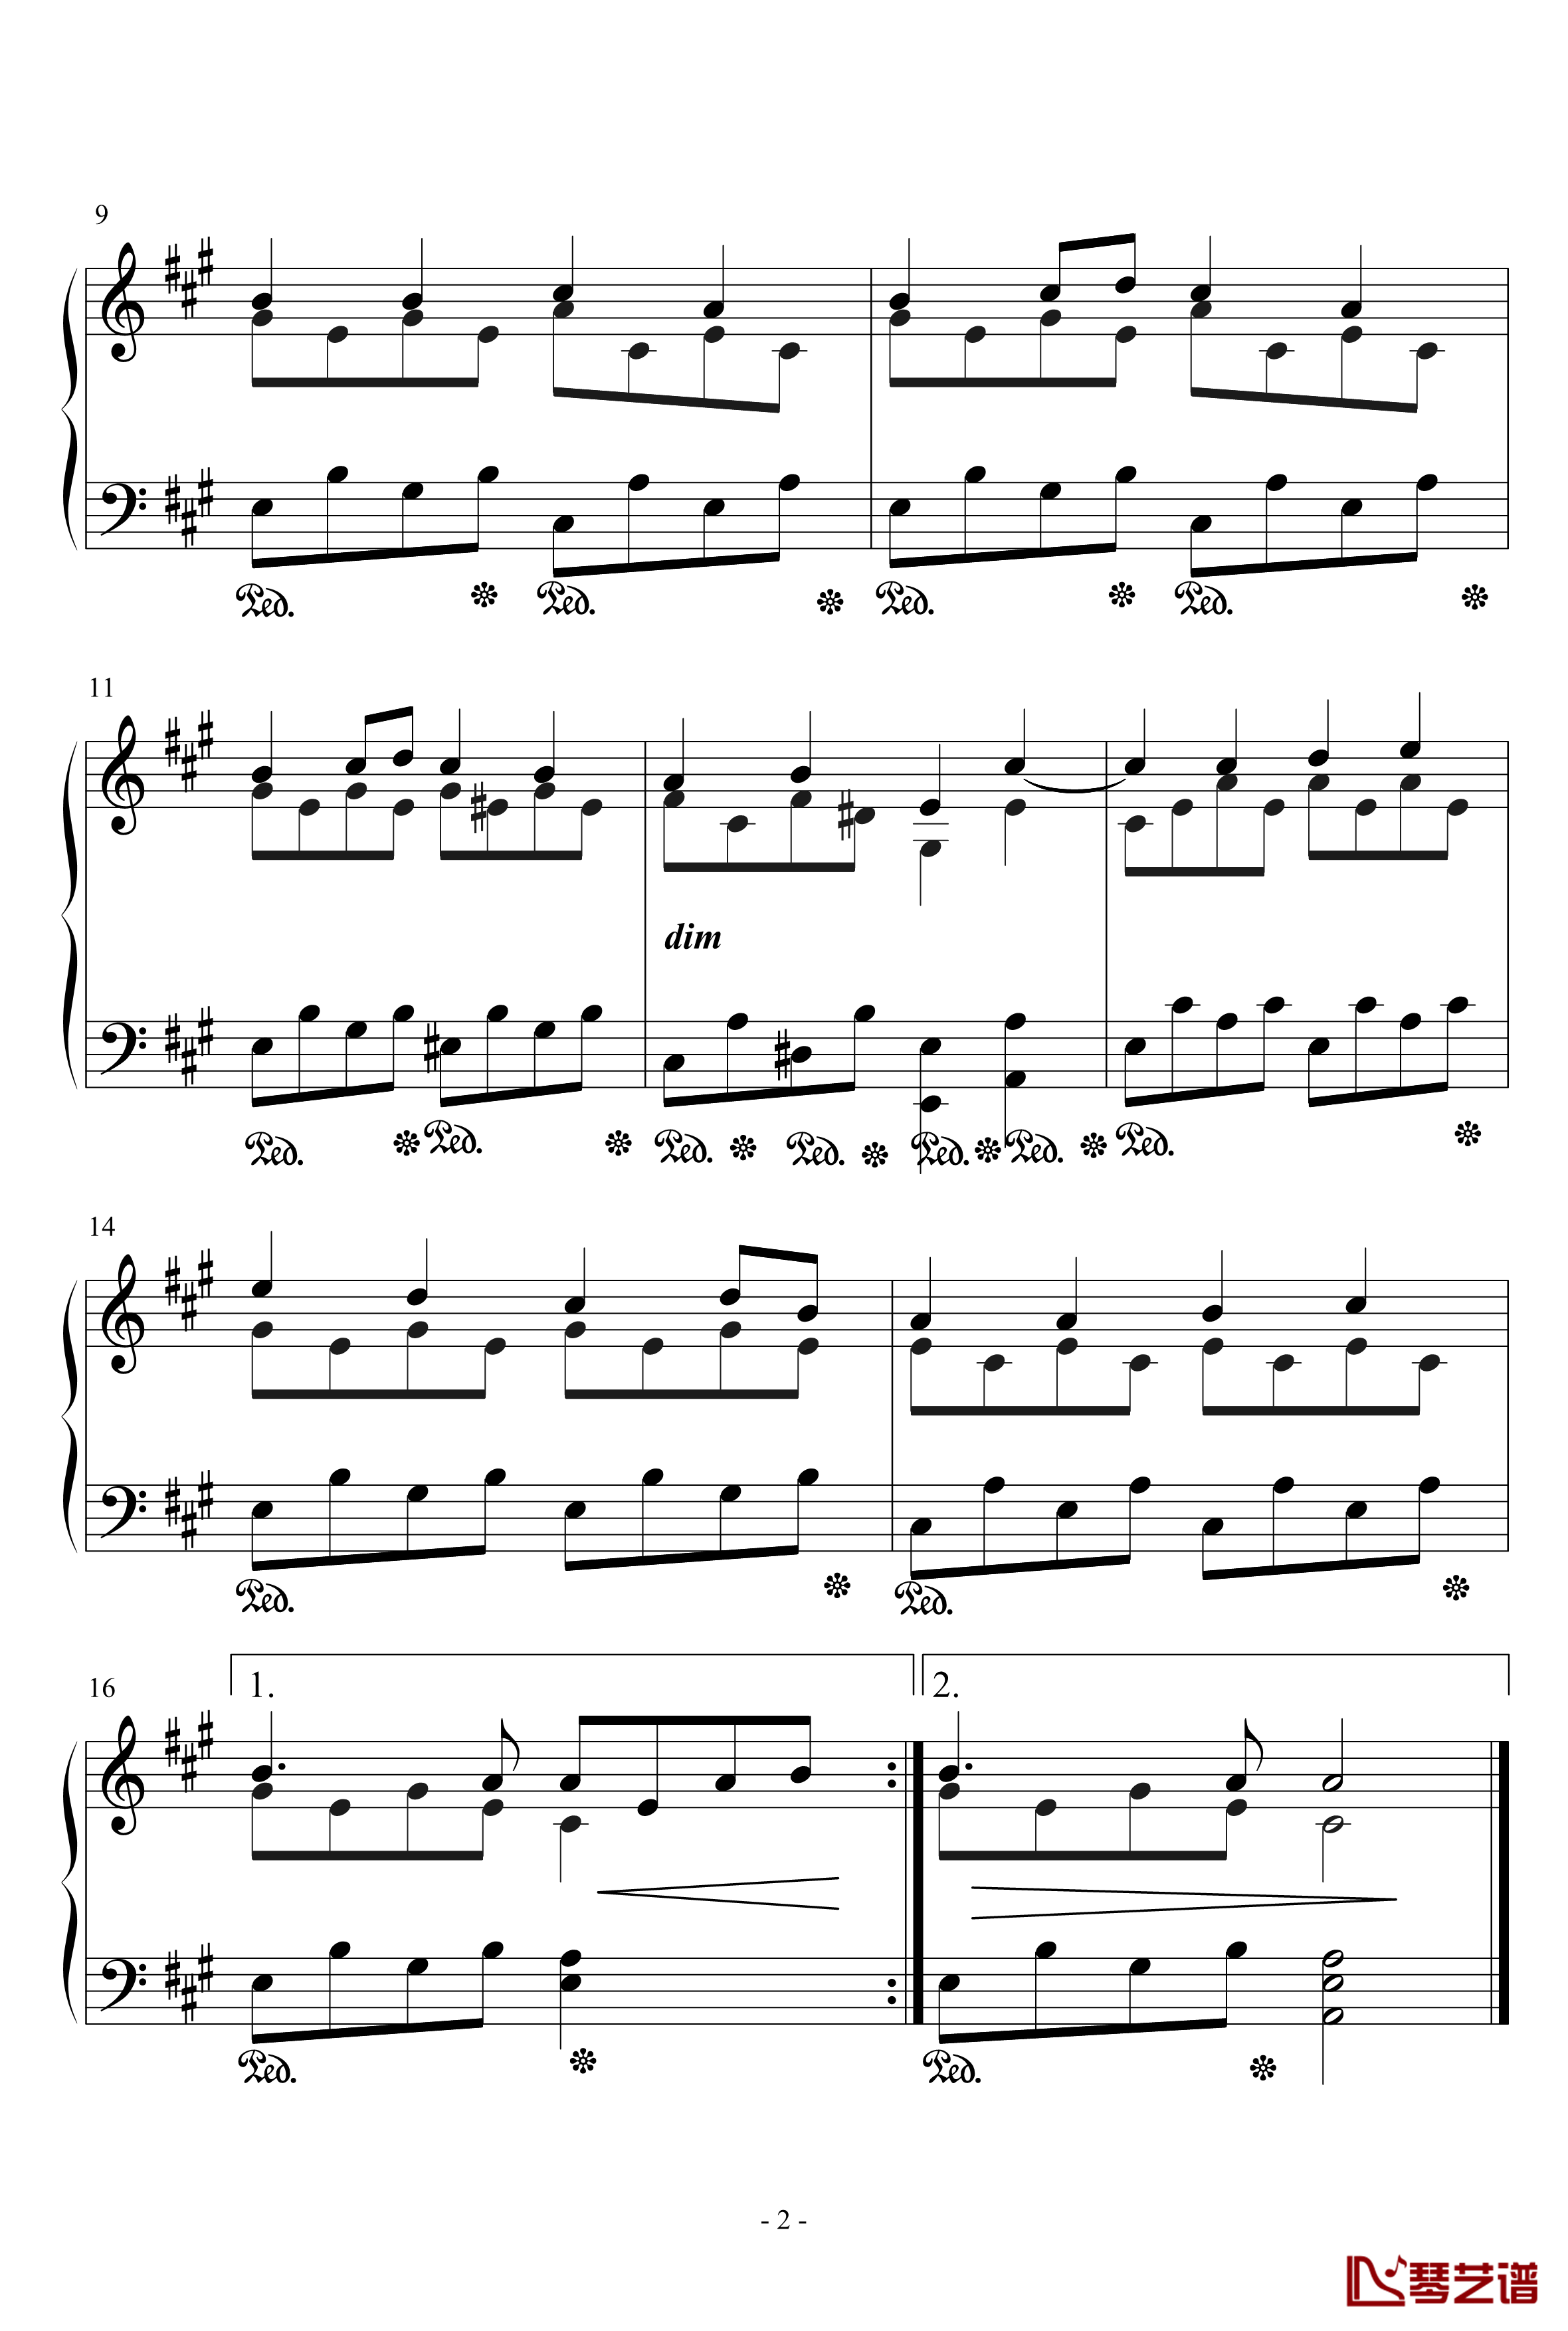 欢乐颂钢琴谱-歌颂神圣版-贝多芬-beethoven2